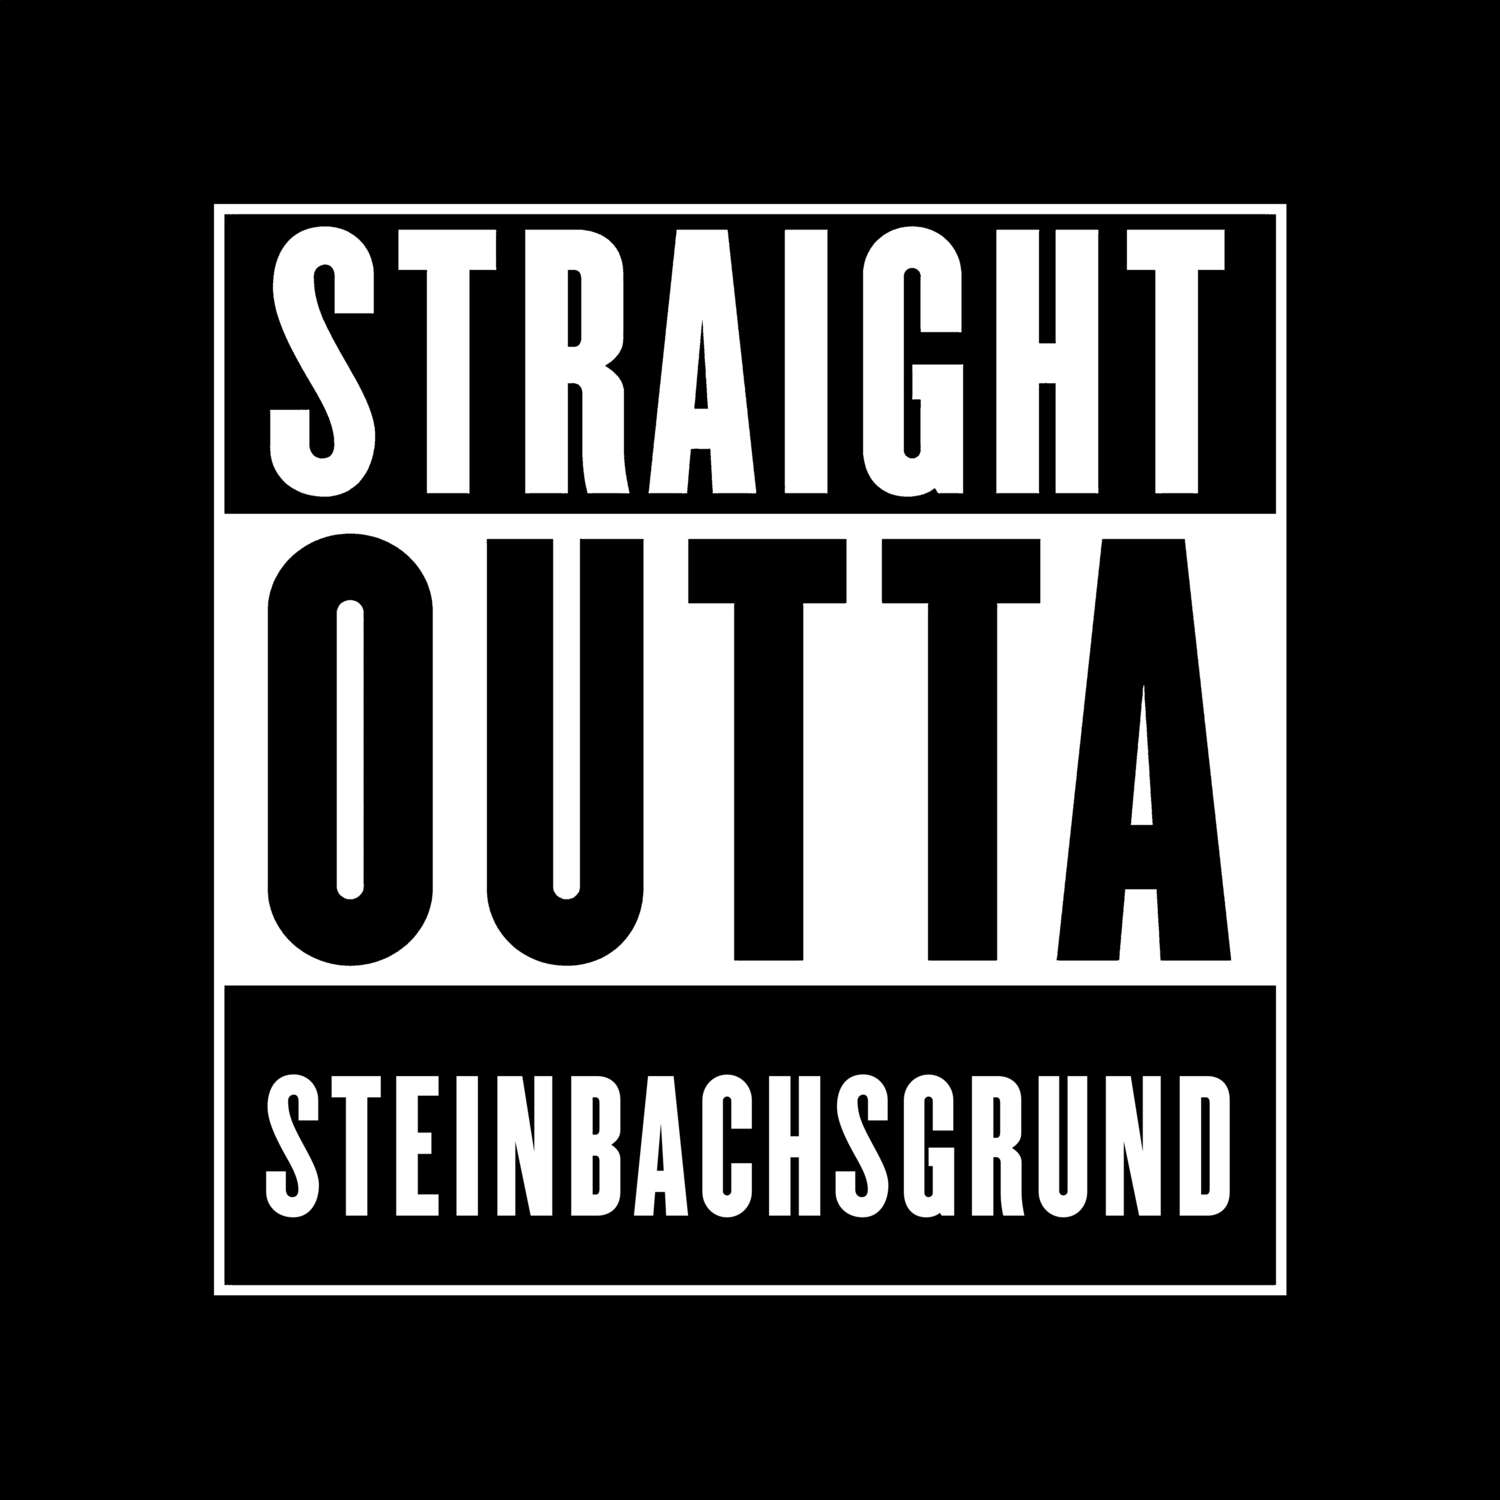 Steinbachsgrund T-Shirt »Straight Outta«